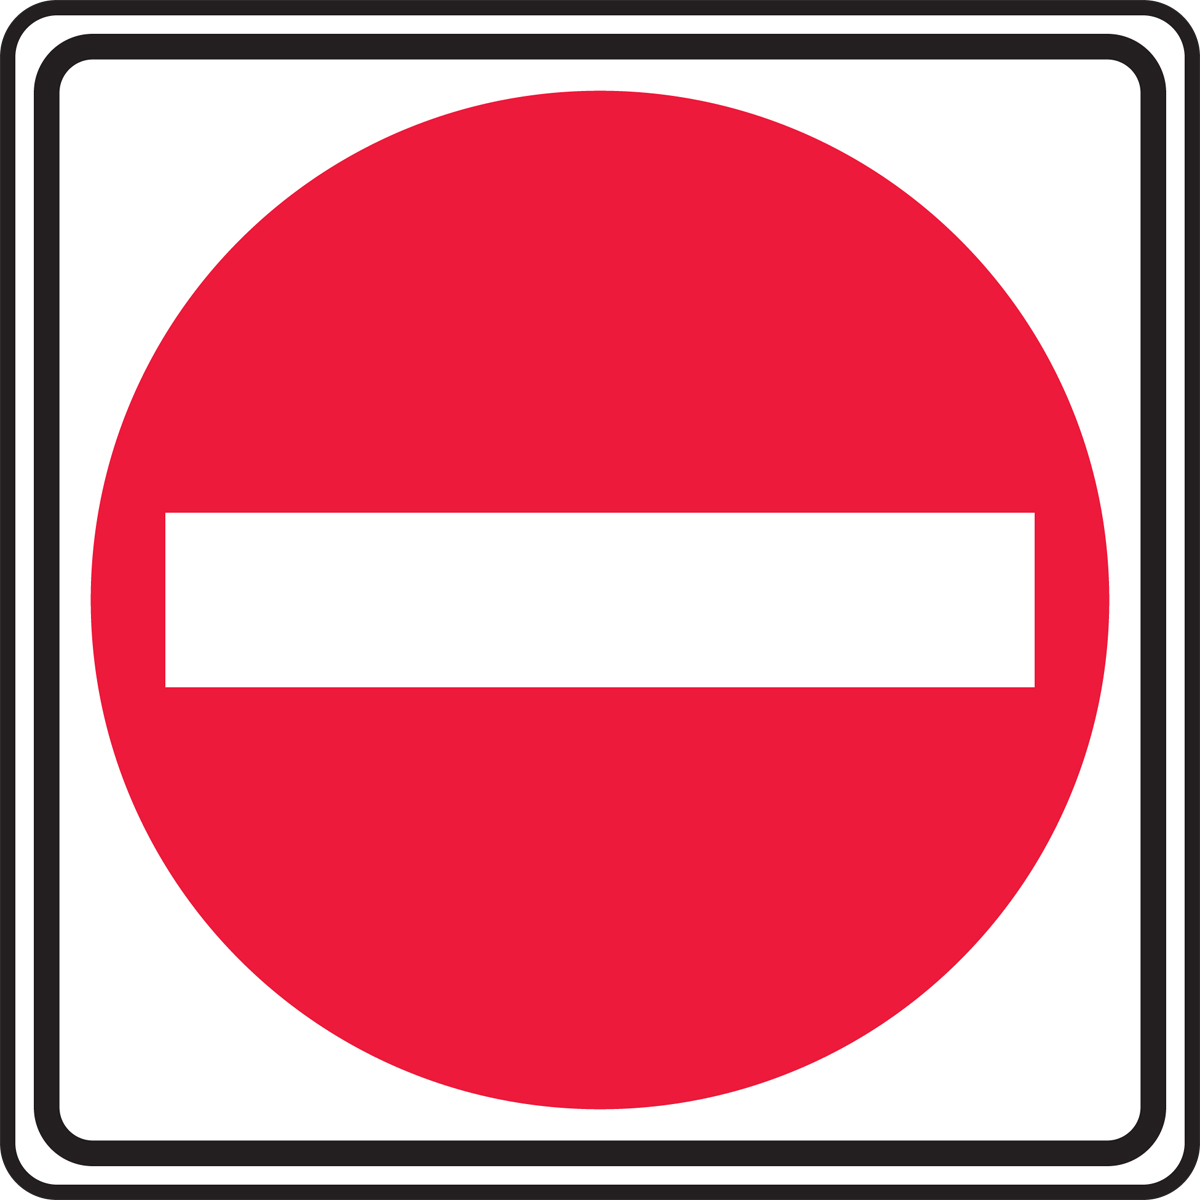 Do Not Enter Traffic Sign FRR382